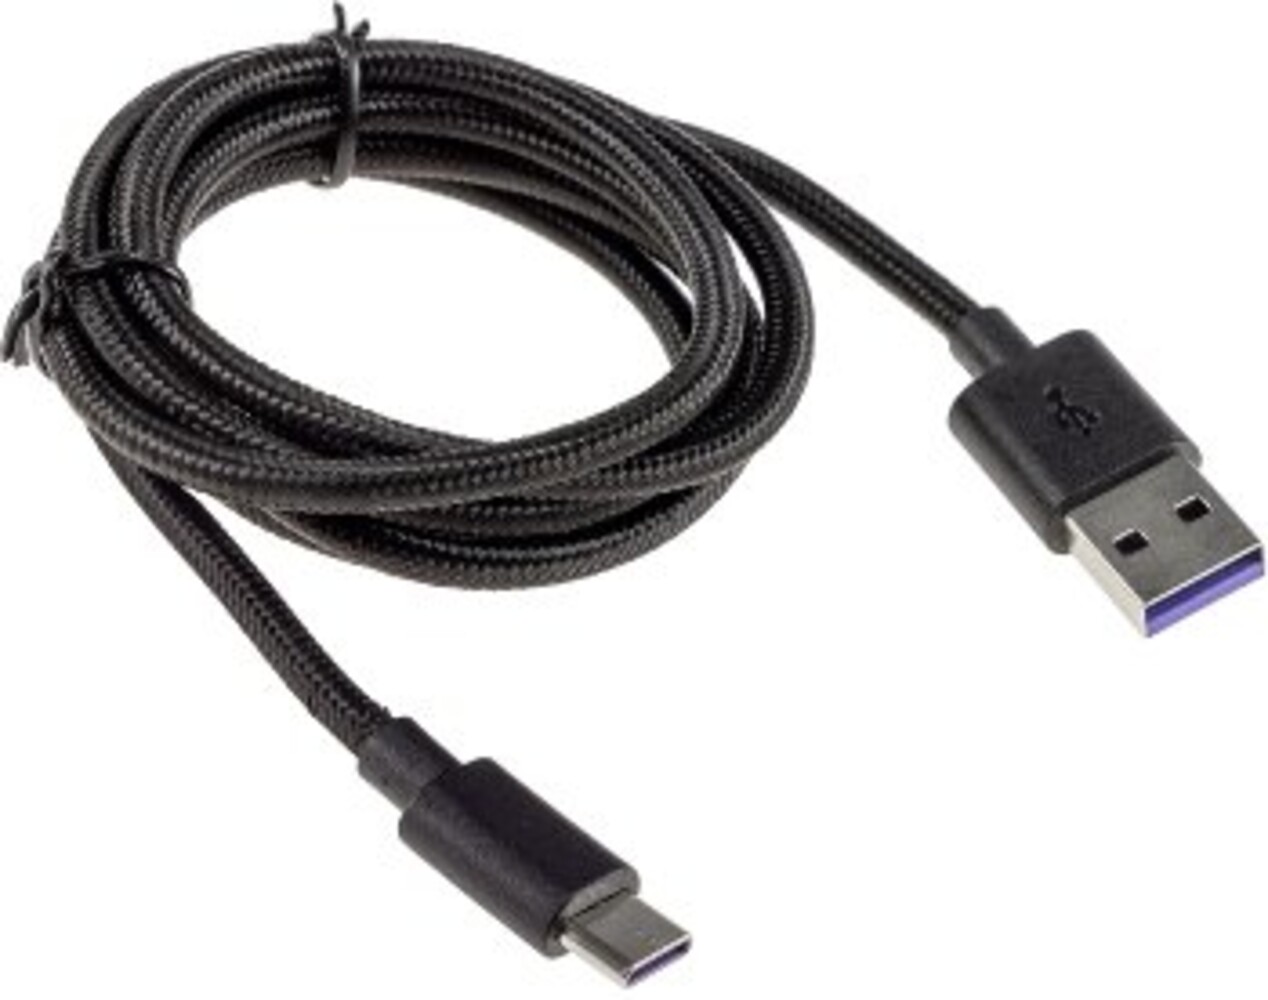 Hochqualitatives Kabel von ChiliTec mit USB A auf USB C Steckern und robustem Design